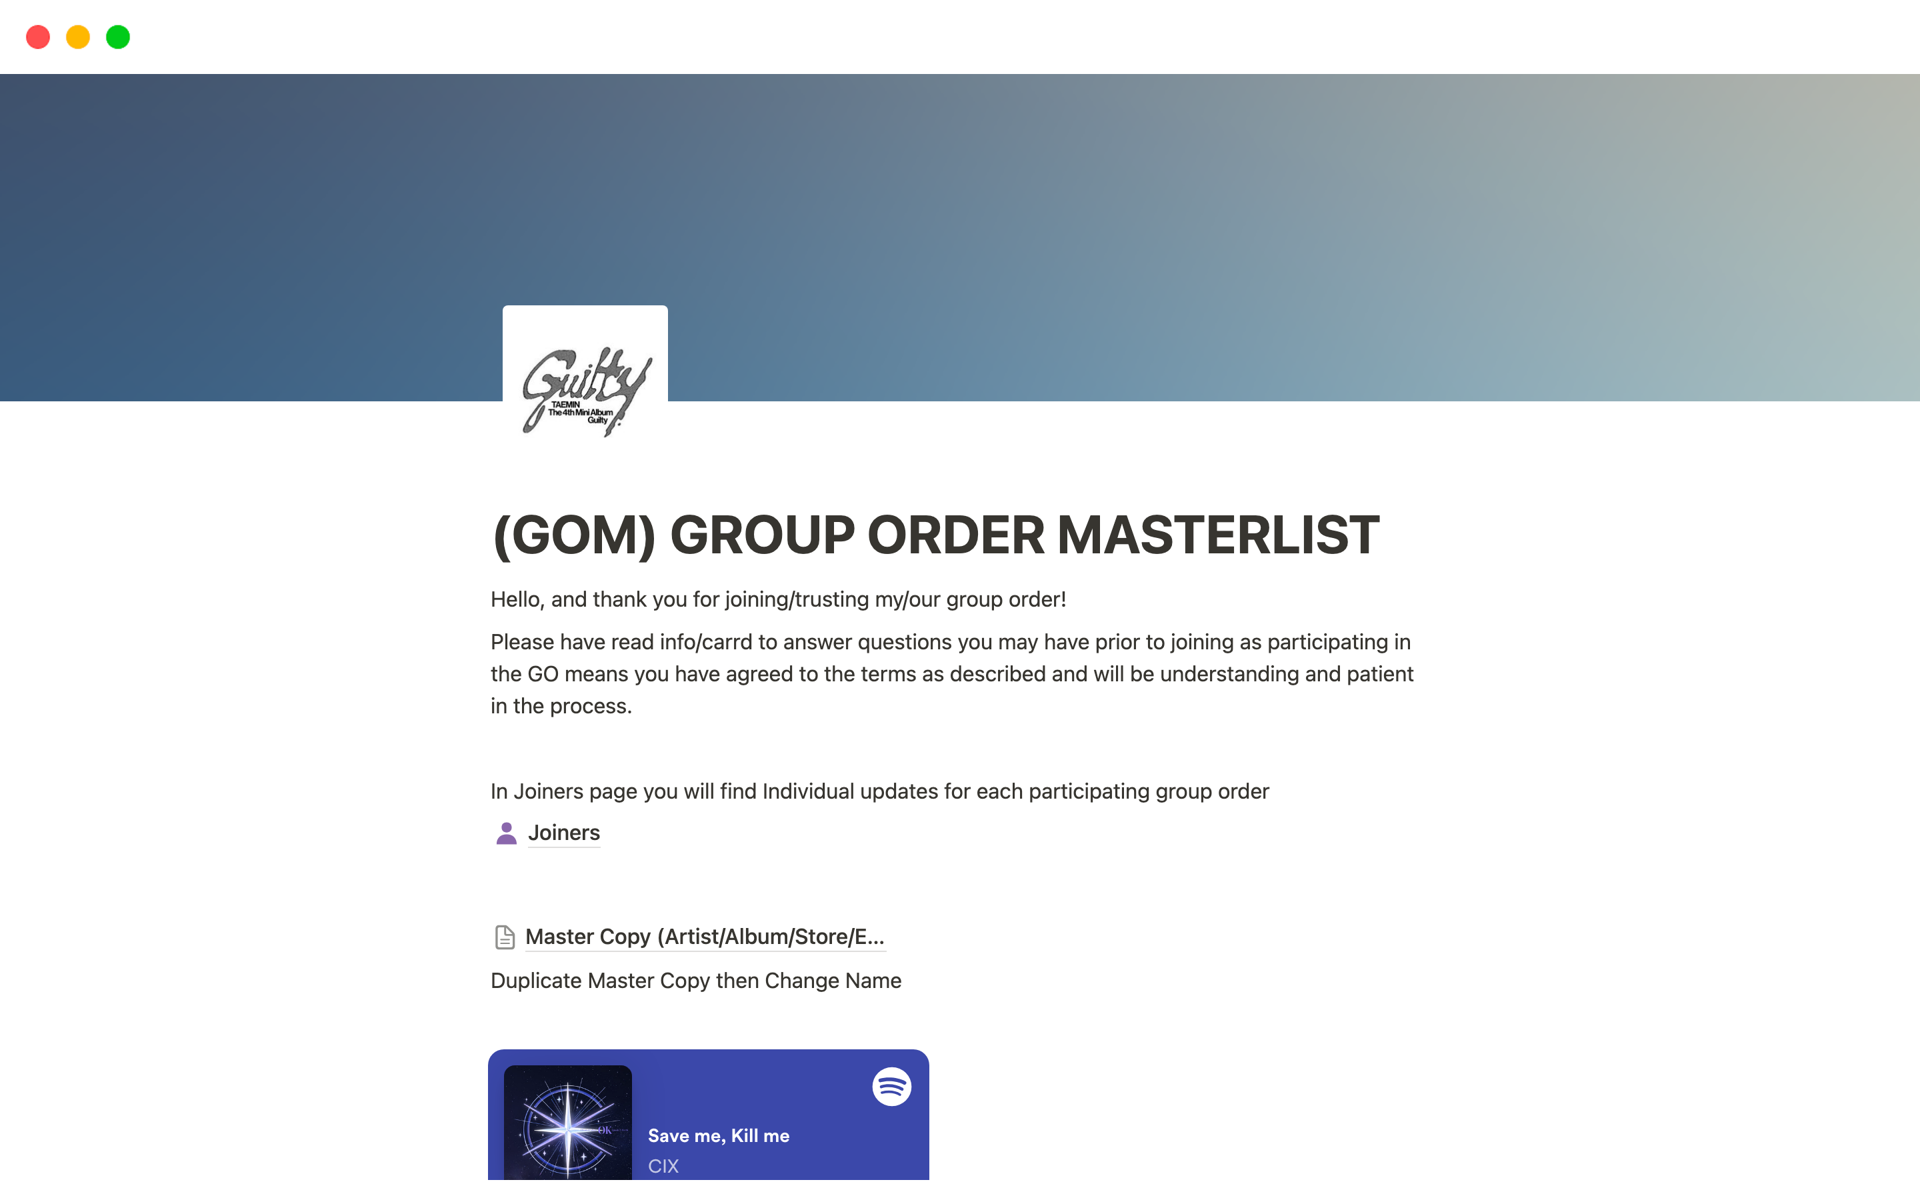 (GOM) Group Order Manger Master Listのテンプレートのプレビュー